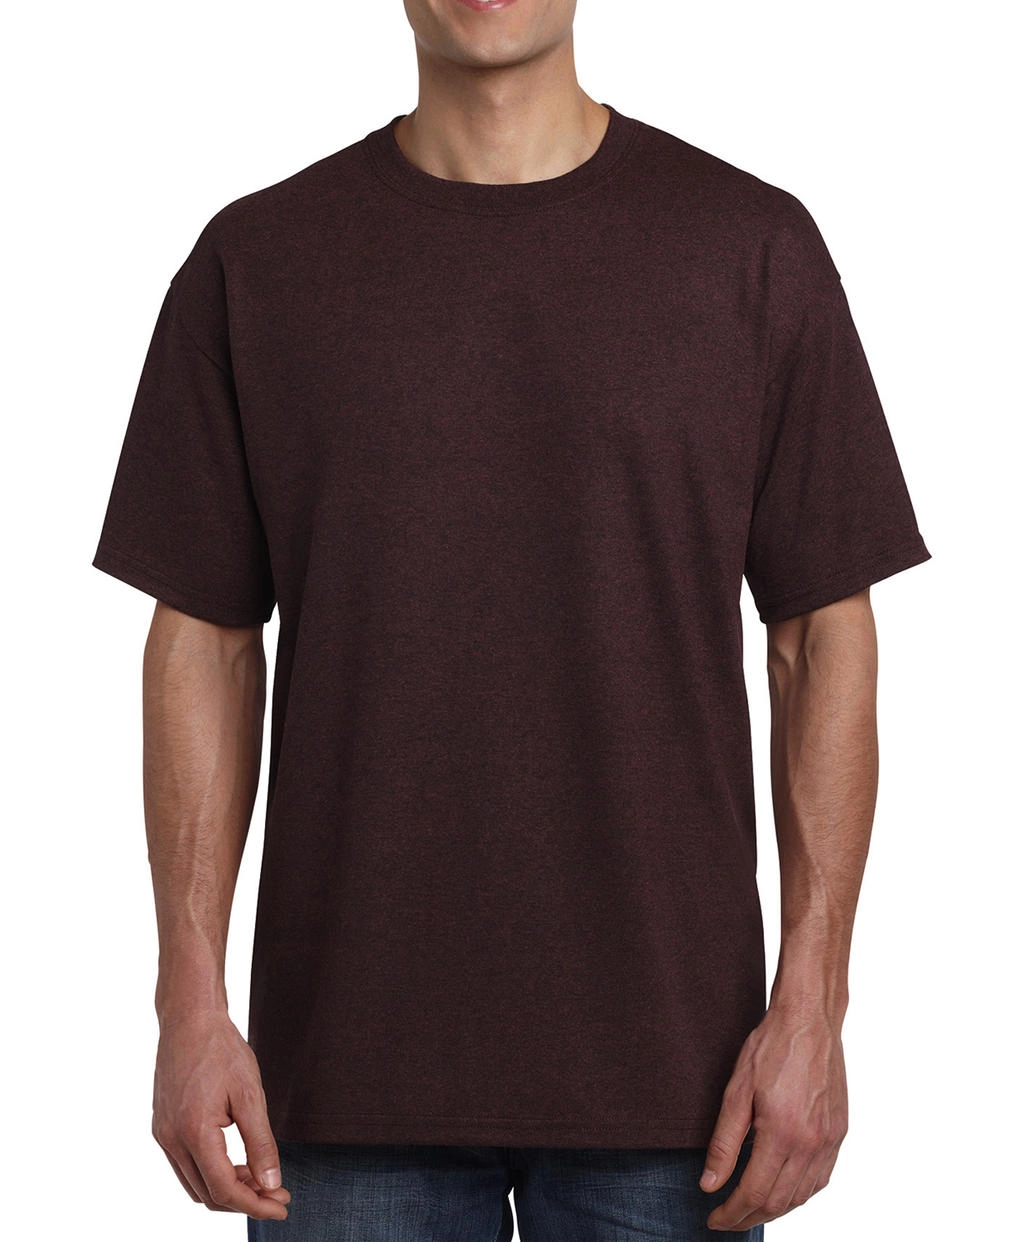 Heavy Cotton Adult T-Shirt zum Besticken und Bedrucken in der Farbe Russet mit Ihren Logo, Schriftzug oder Motiv.